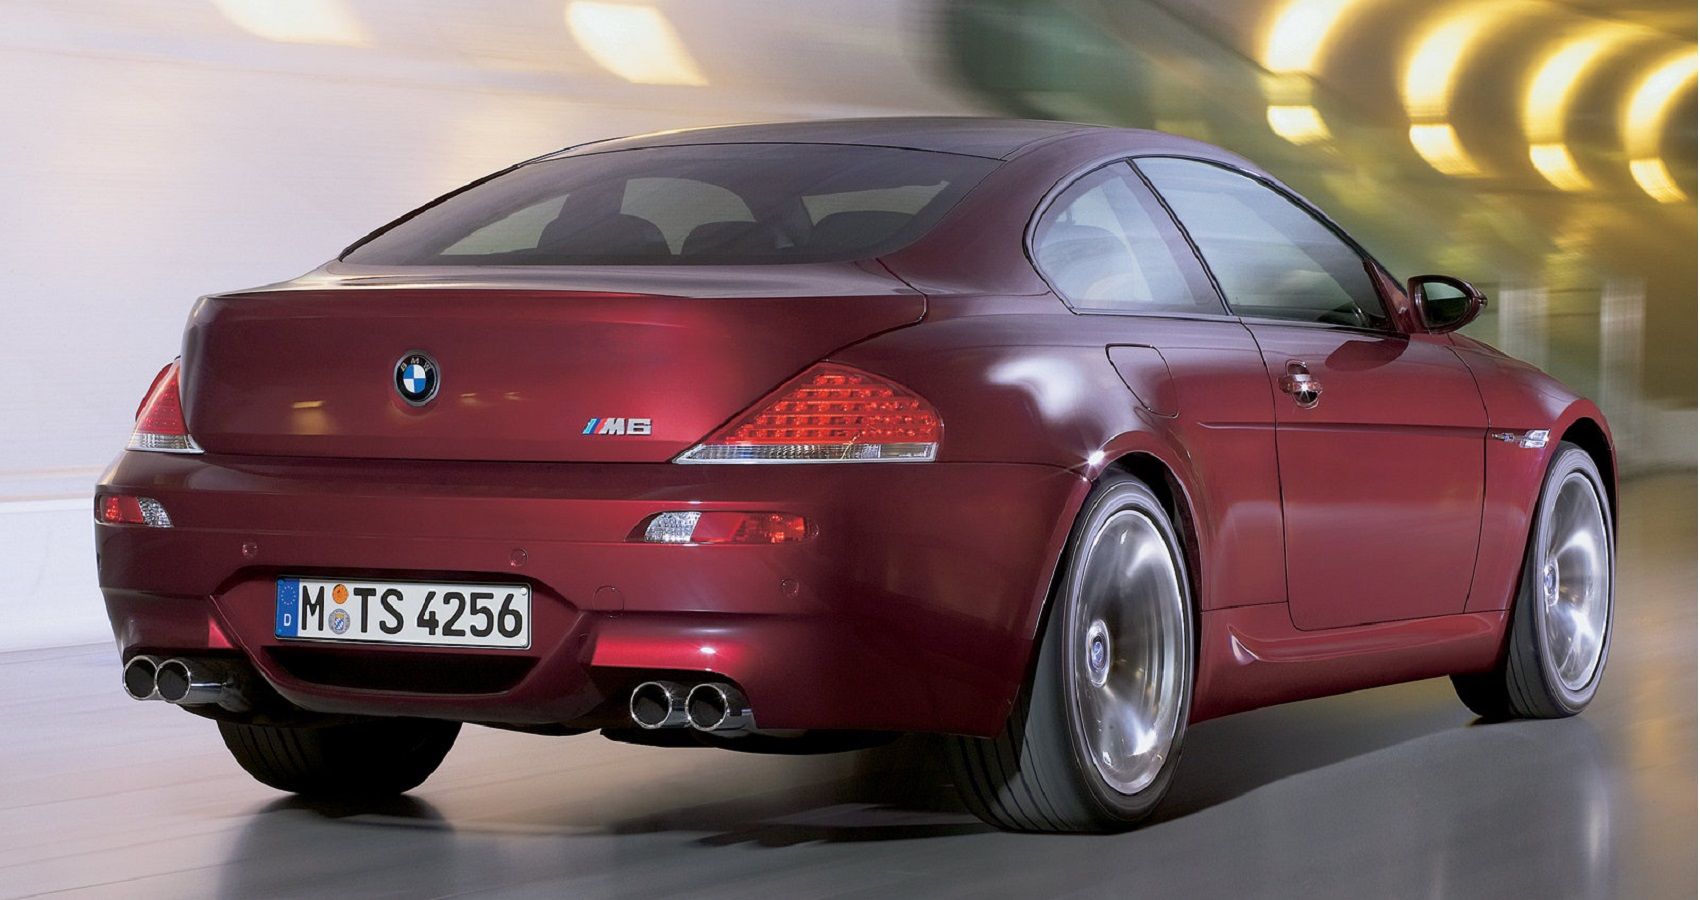 BMW M6 - Rear